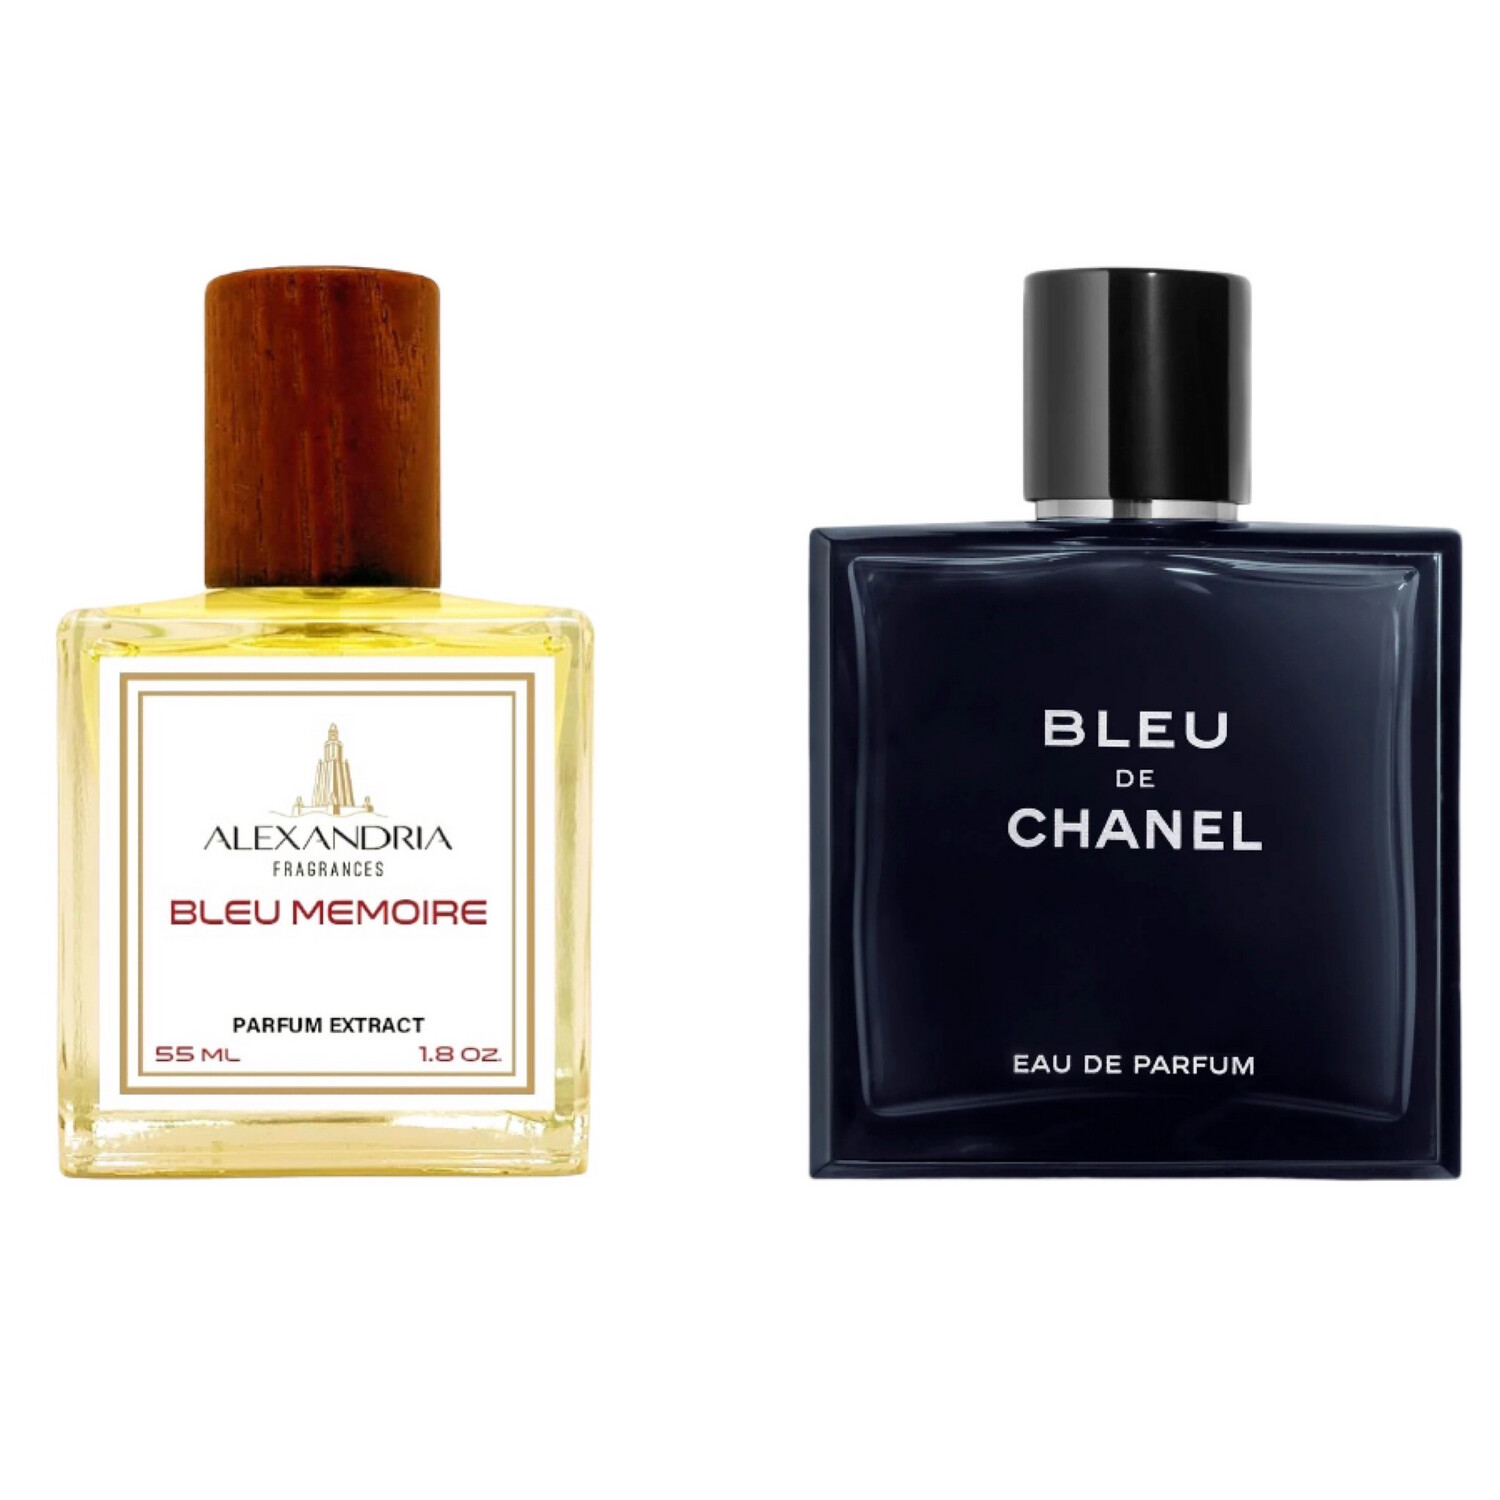 Bleu Memoire Inspirado Bleu de Chanel EDP extracto perfume Alexandria Fragrances